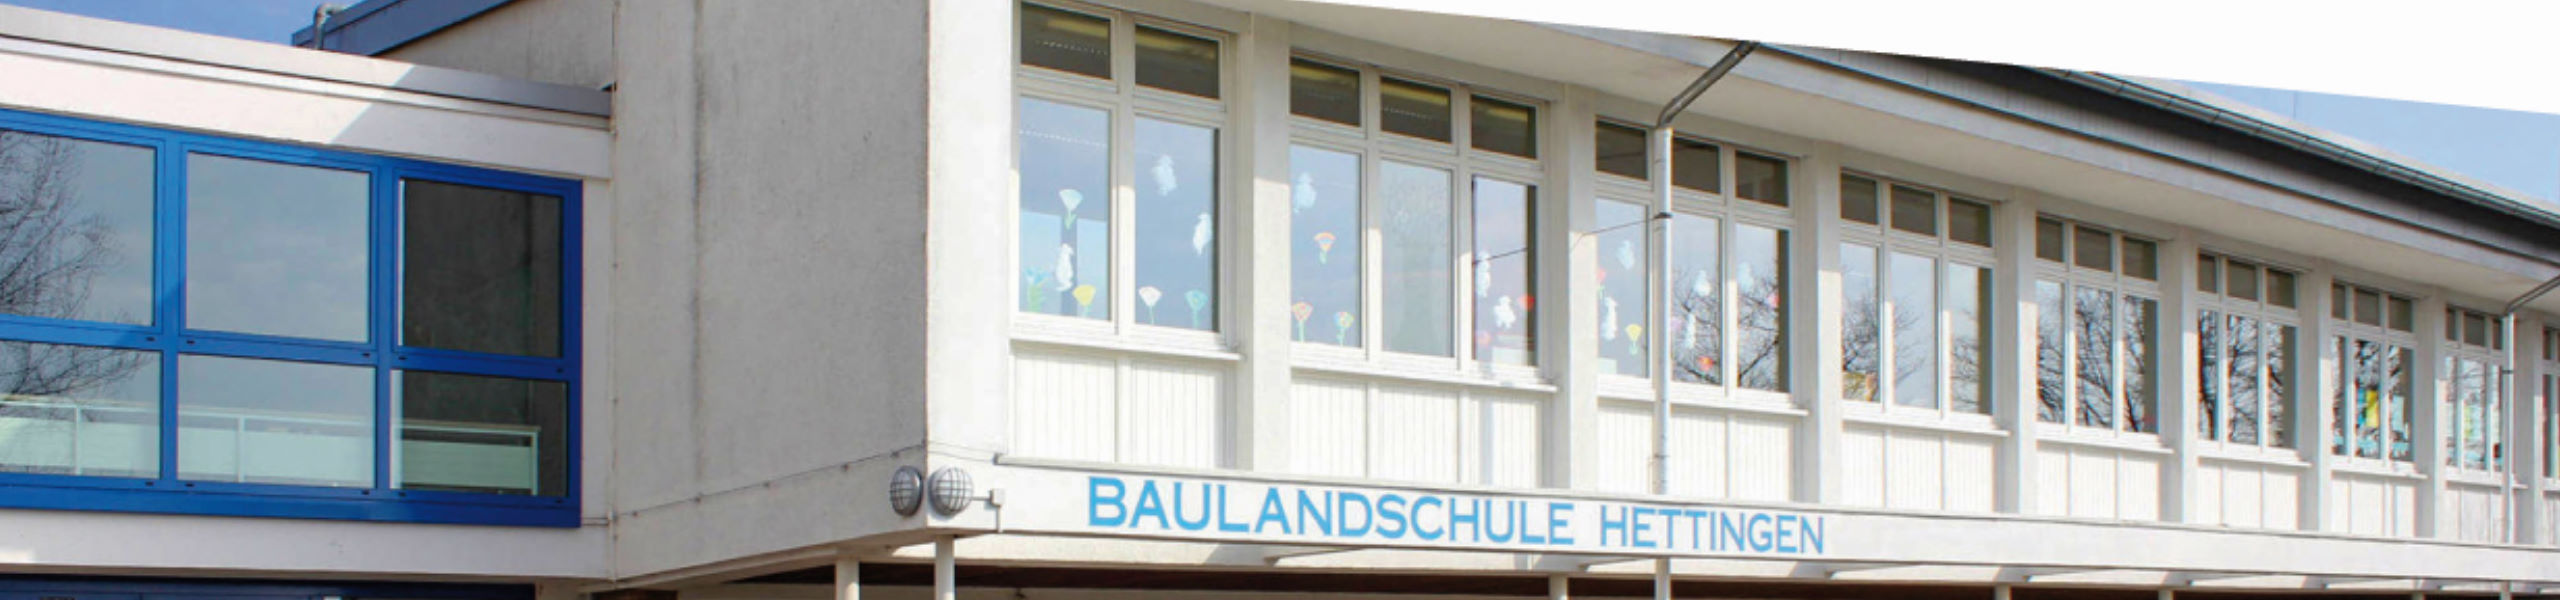 Baulandschule Hettingen - Kollegium / Mitarbeiter